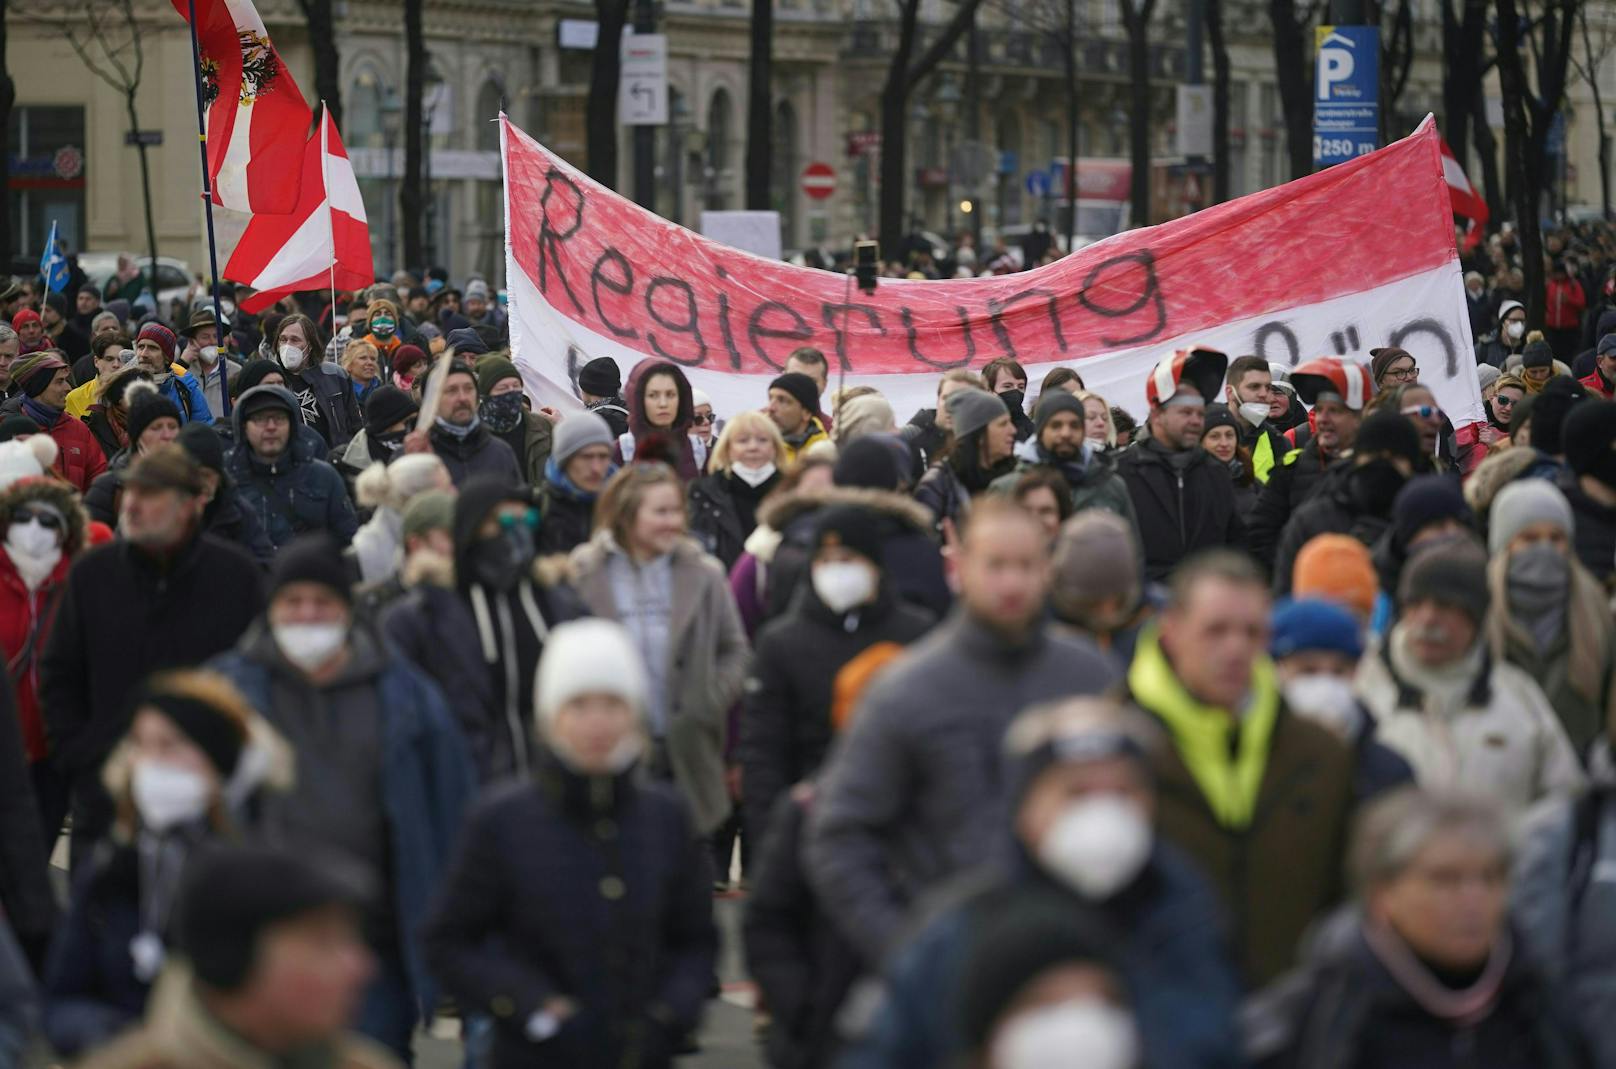 Die Demonstration die am 31. Jänner in Wien stattfand, sorgte für ein politisches Nachspiel.&nbsp;